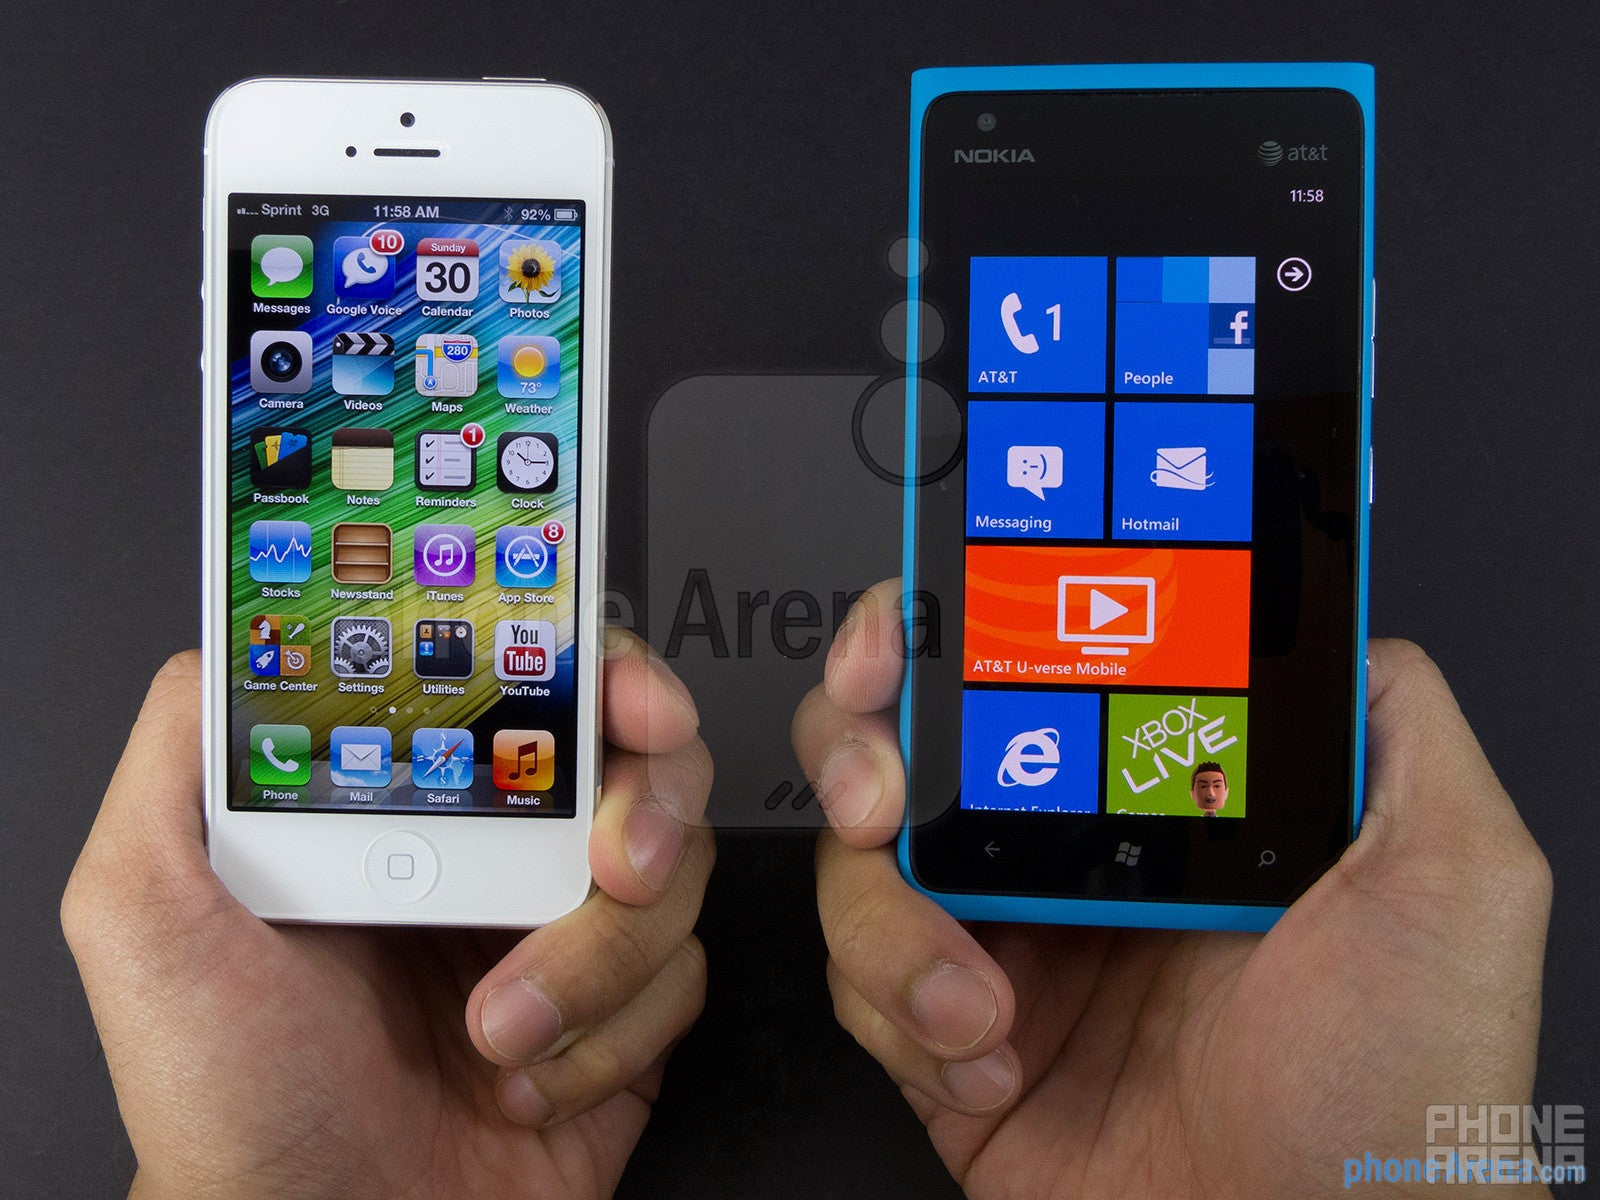 Apple iPhone 5 vs Nokia Lumia 900